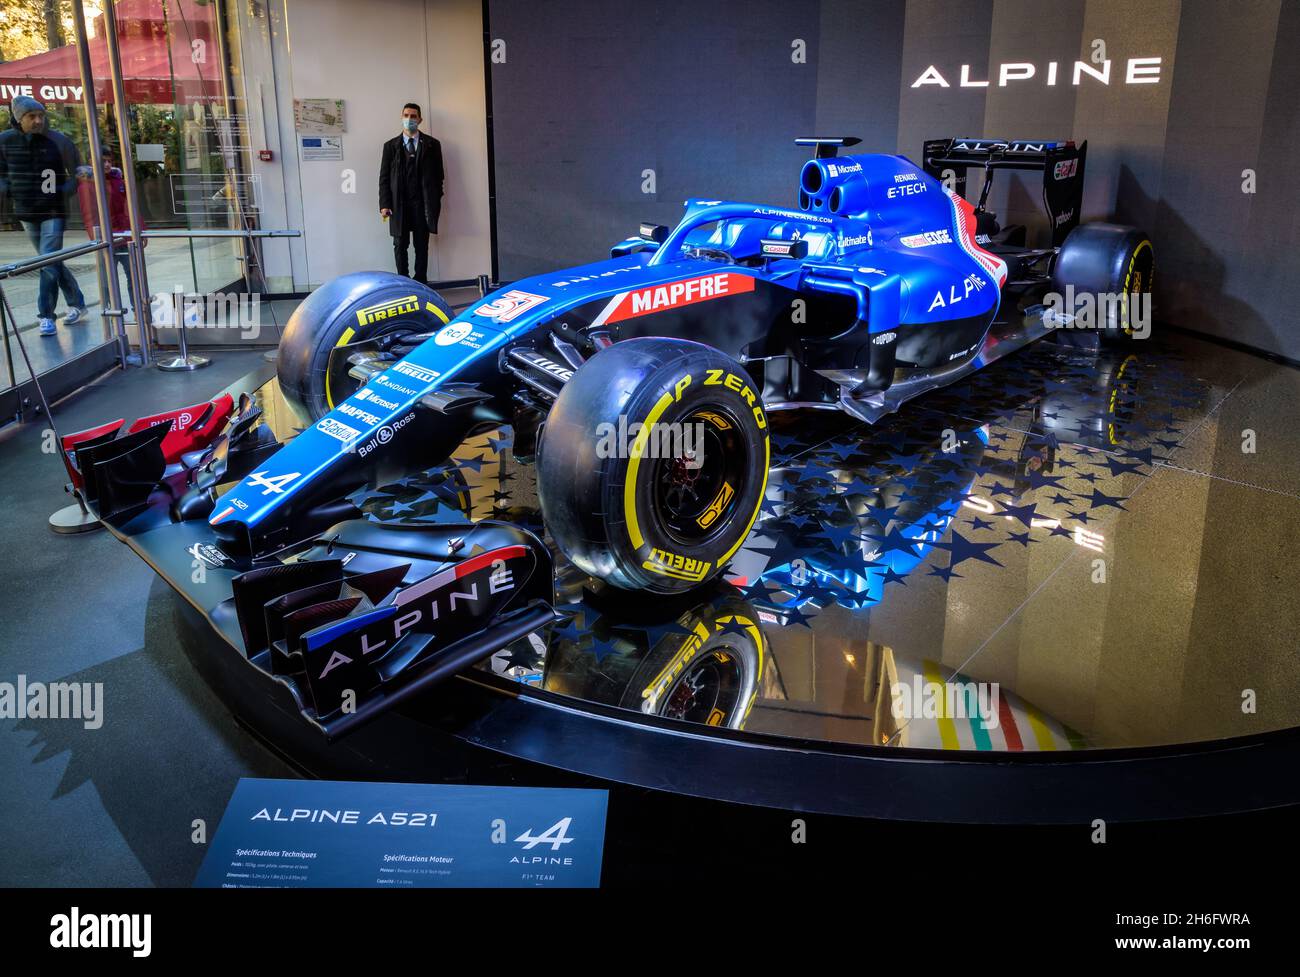 Der Alpine A521-Rennwagen, der an der FIA Formel 1 (F1) Weltmeisterschaft 2021 teilnimmt, wurde im Atelier Renault Showroom in Paris, Frankreich, ausgestellt. Stockfoto